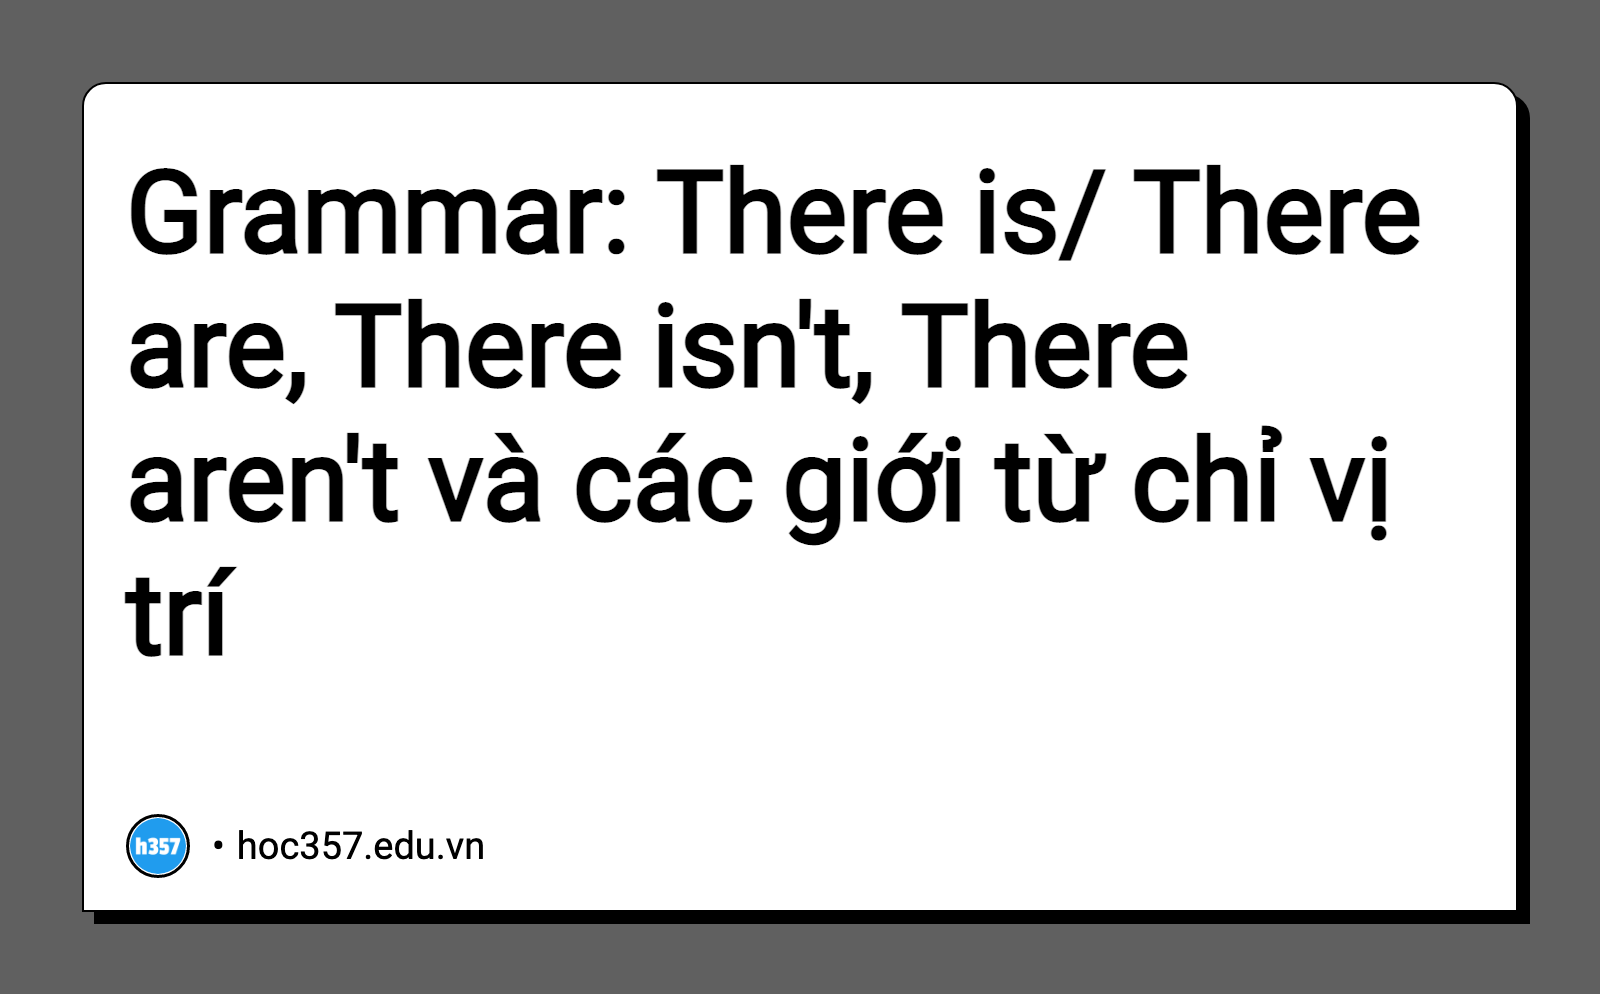 Hình minh họa Grammar: There is/ There are, There isn't, There aren't và các giới từ chỉ vị trí